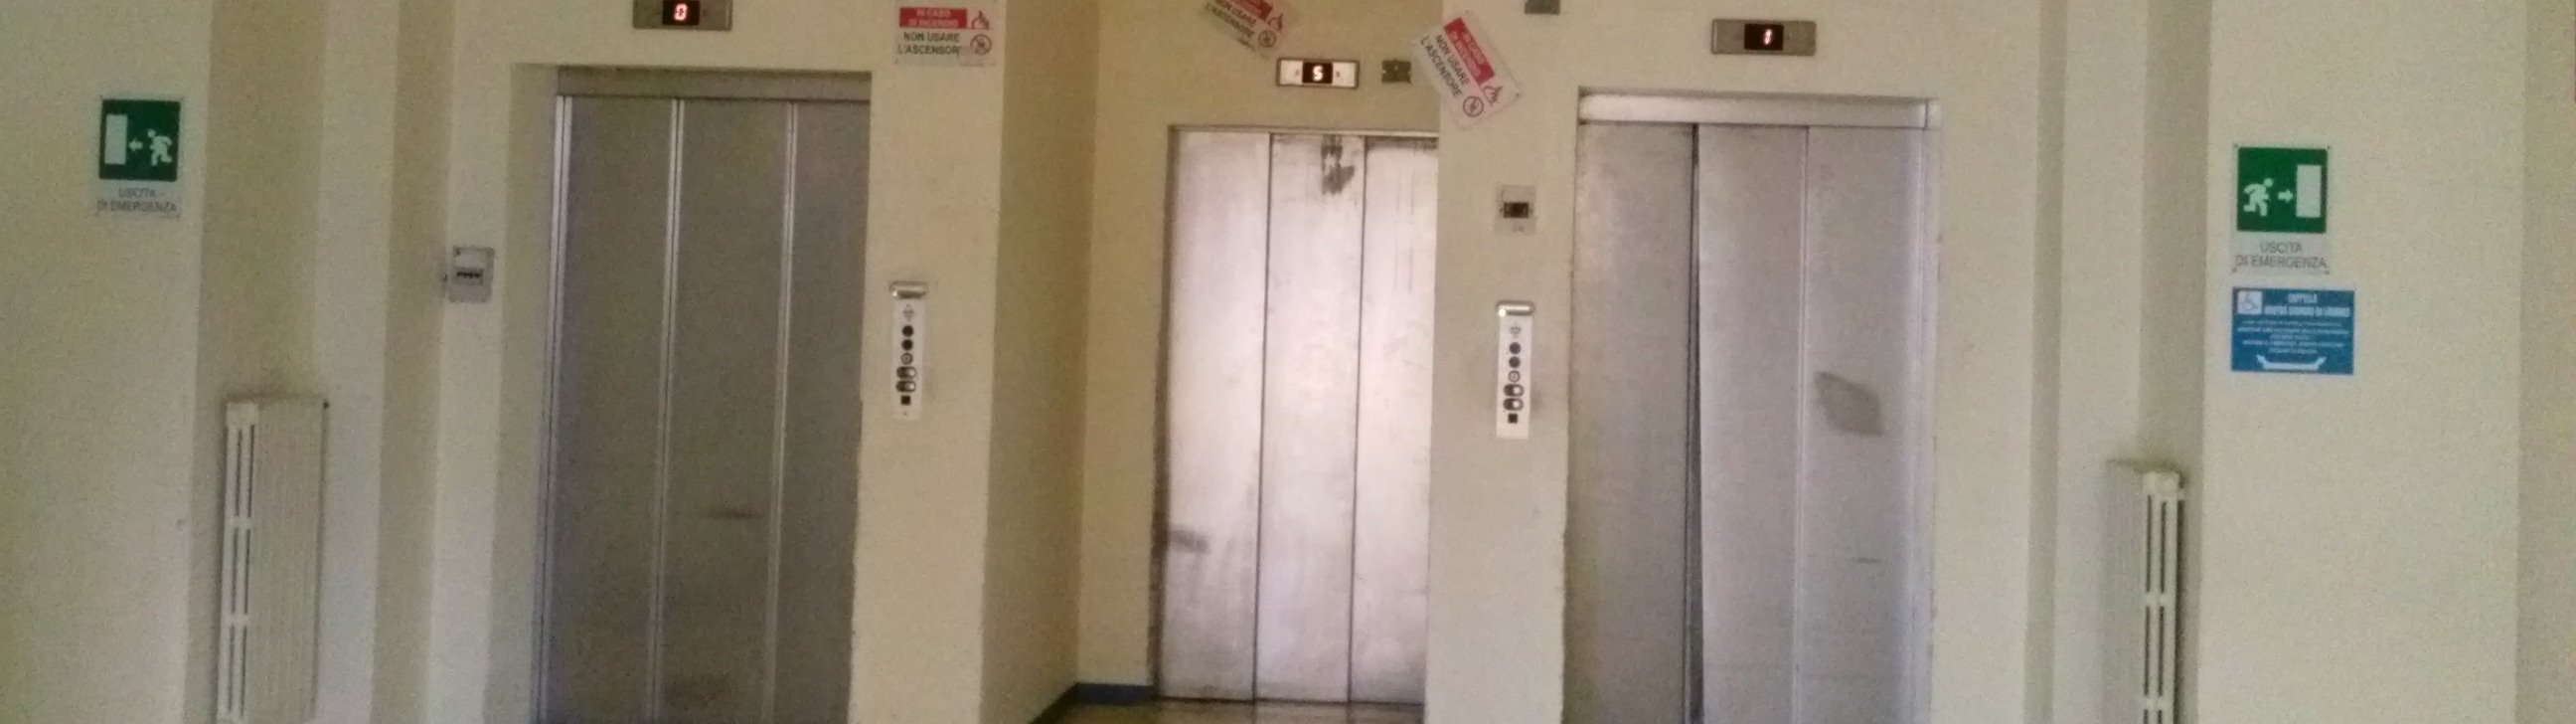 Vincenzo Logozzo sugli ascensori dell’ospedale di Locri